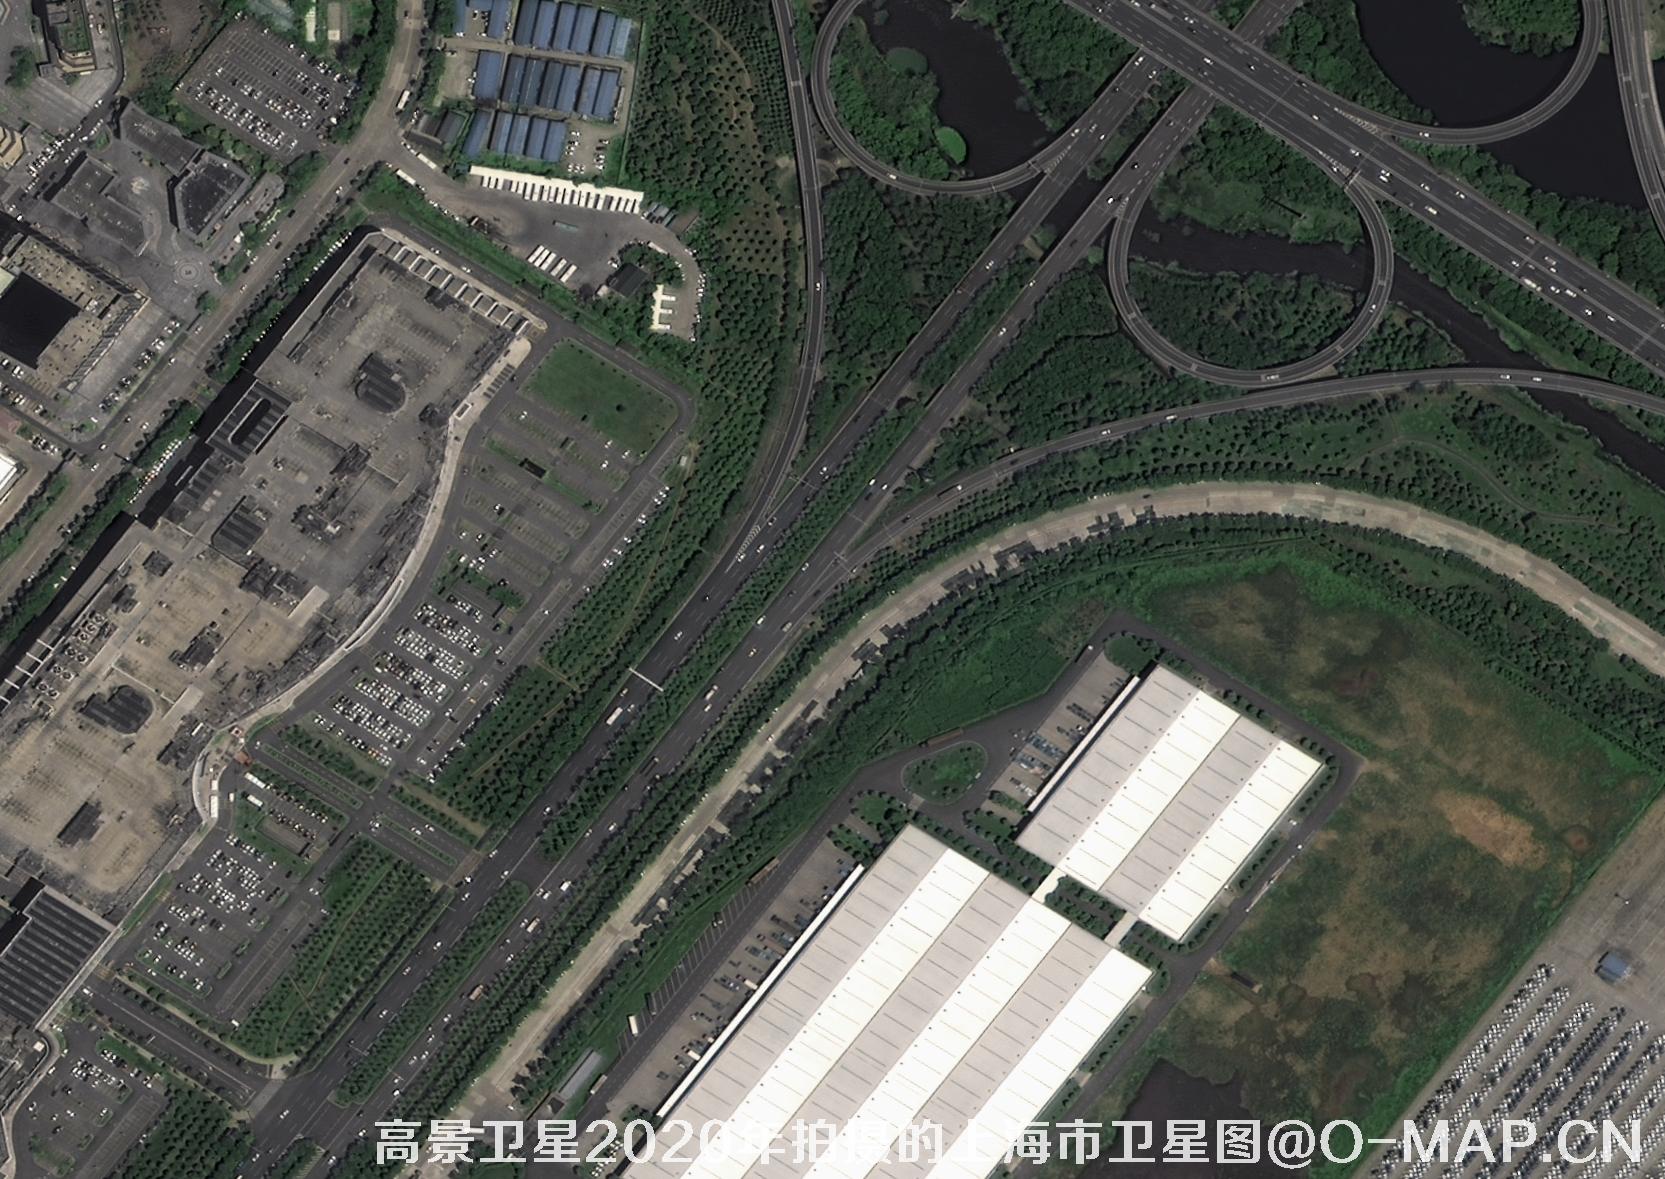 0.5米分辨率高景卫星2020年拍摄的武汉市卫星图